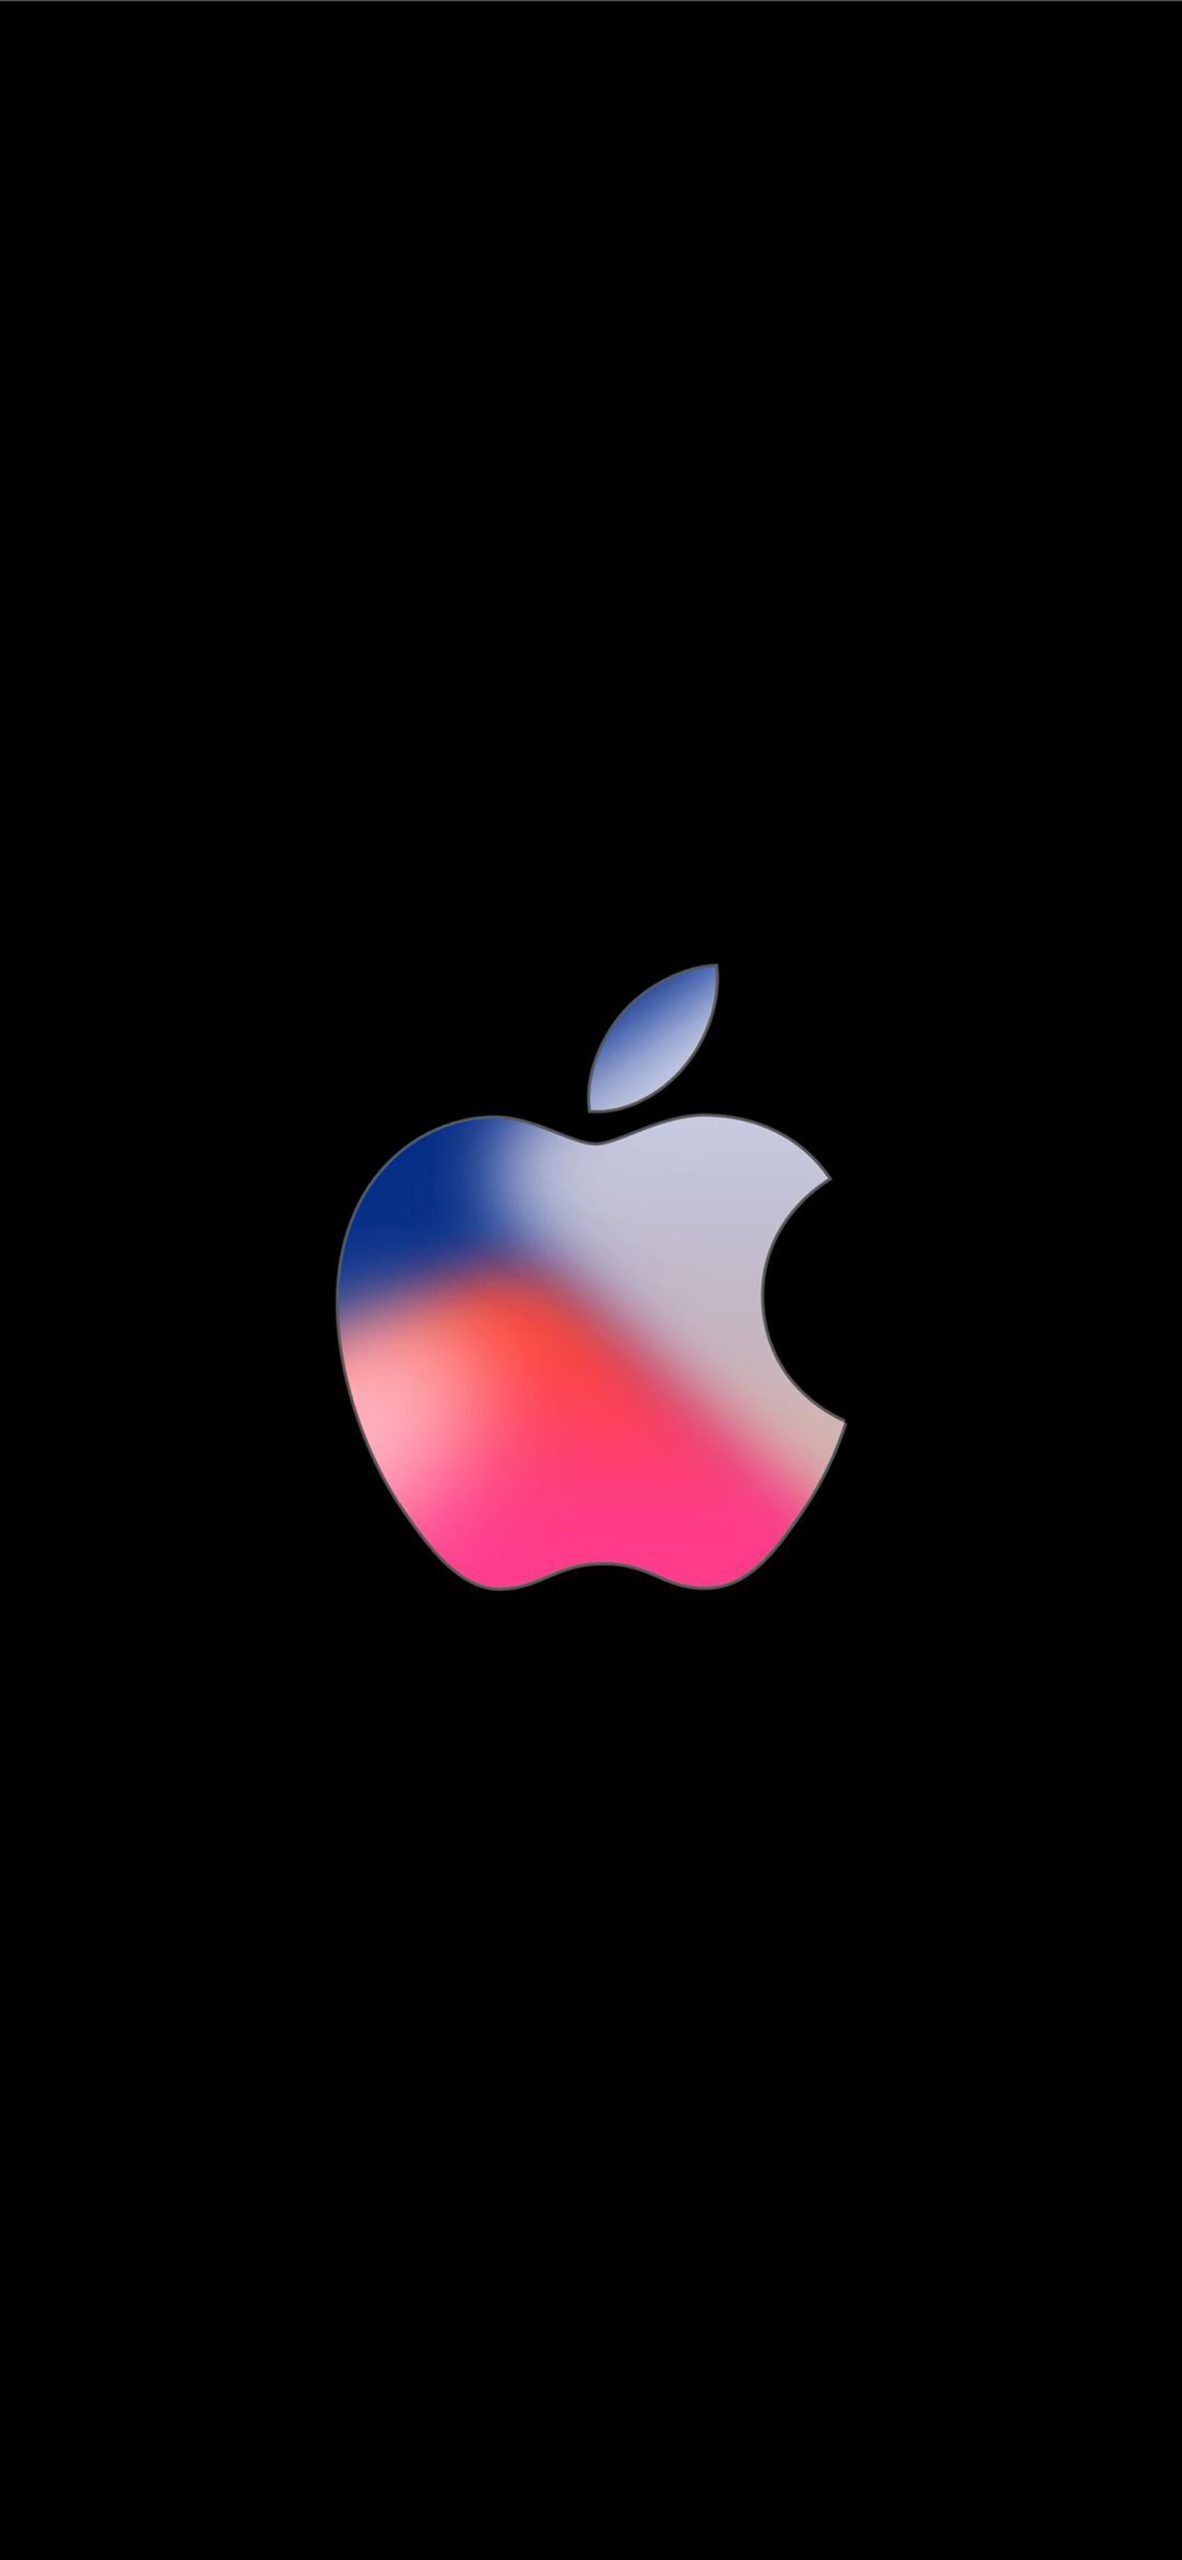  Apple IPhone Hintergrundbild 1182x2560. Apple Hintergrundbilder Für Mac und iOS [iphone 11] → DieMalen.com